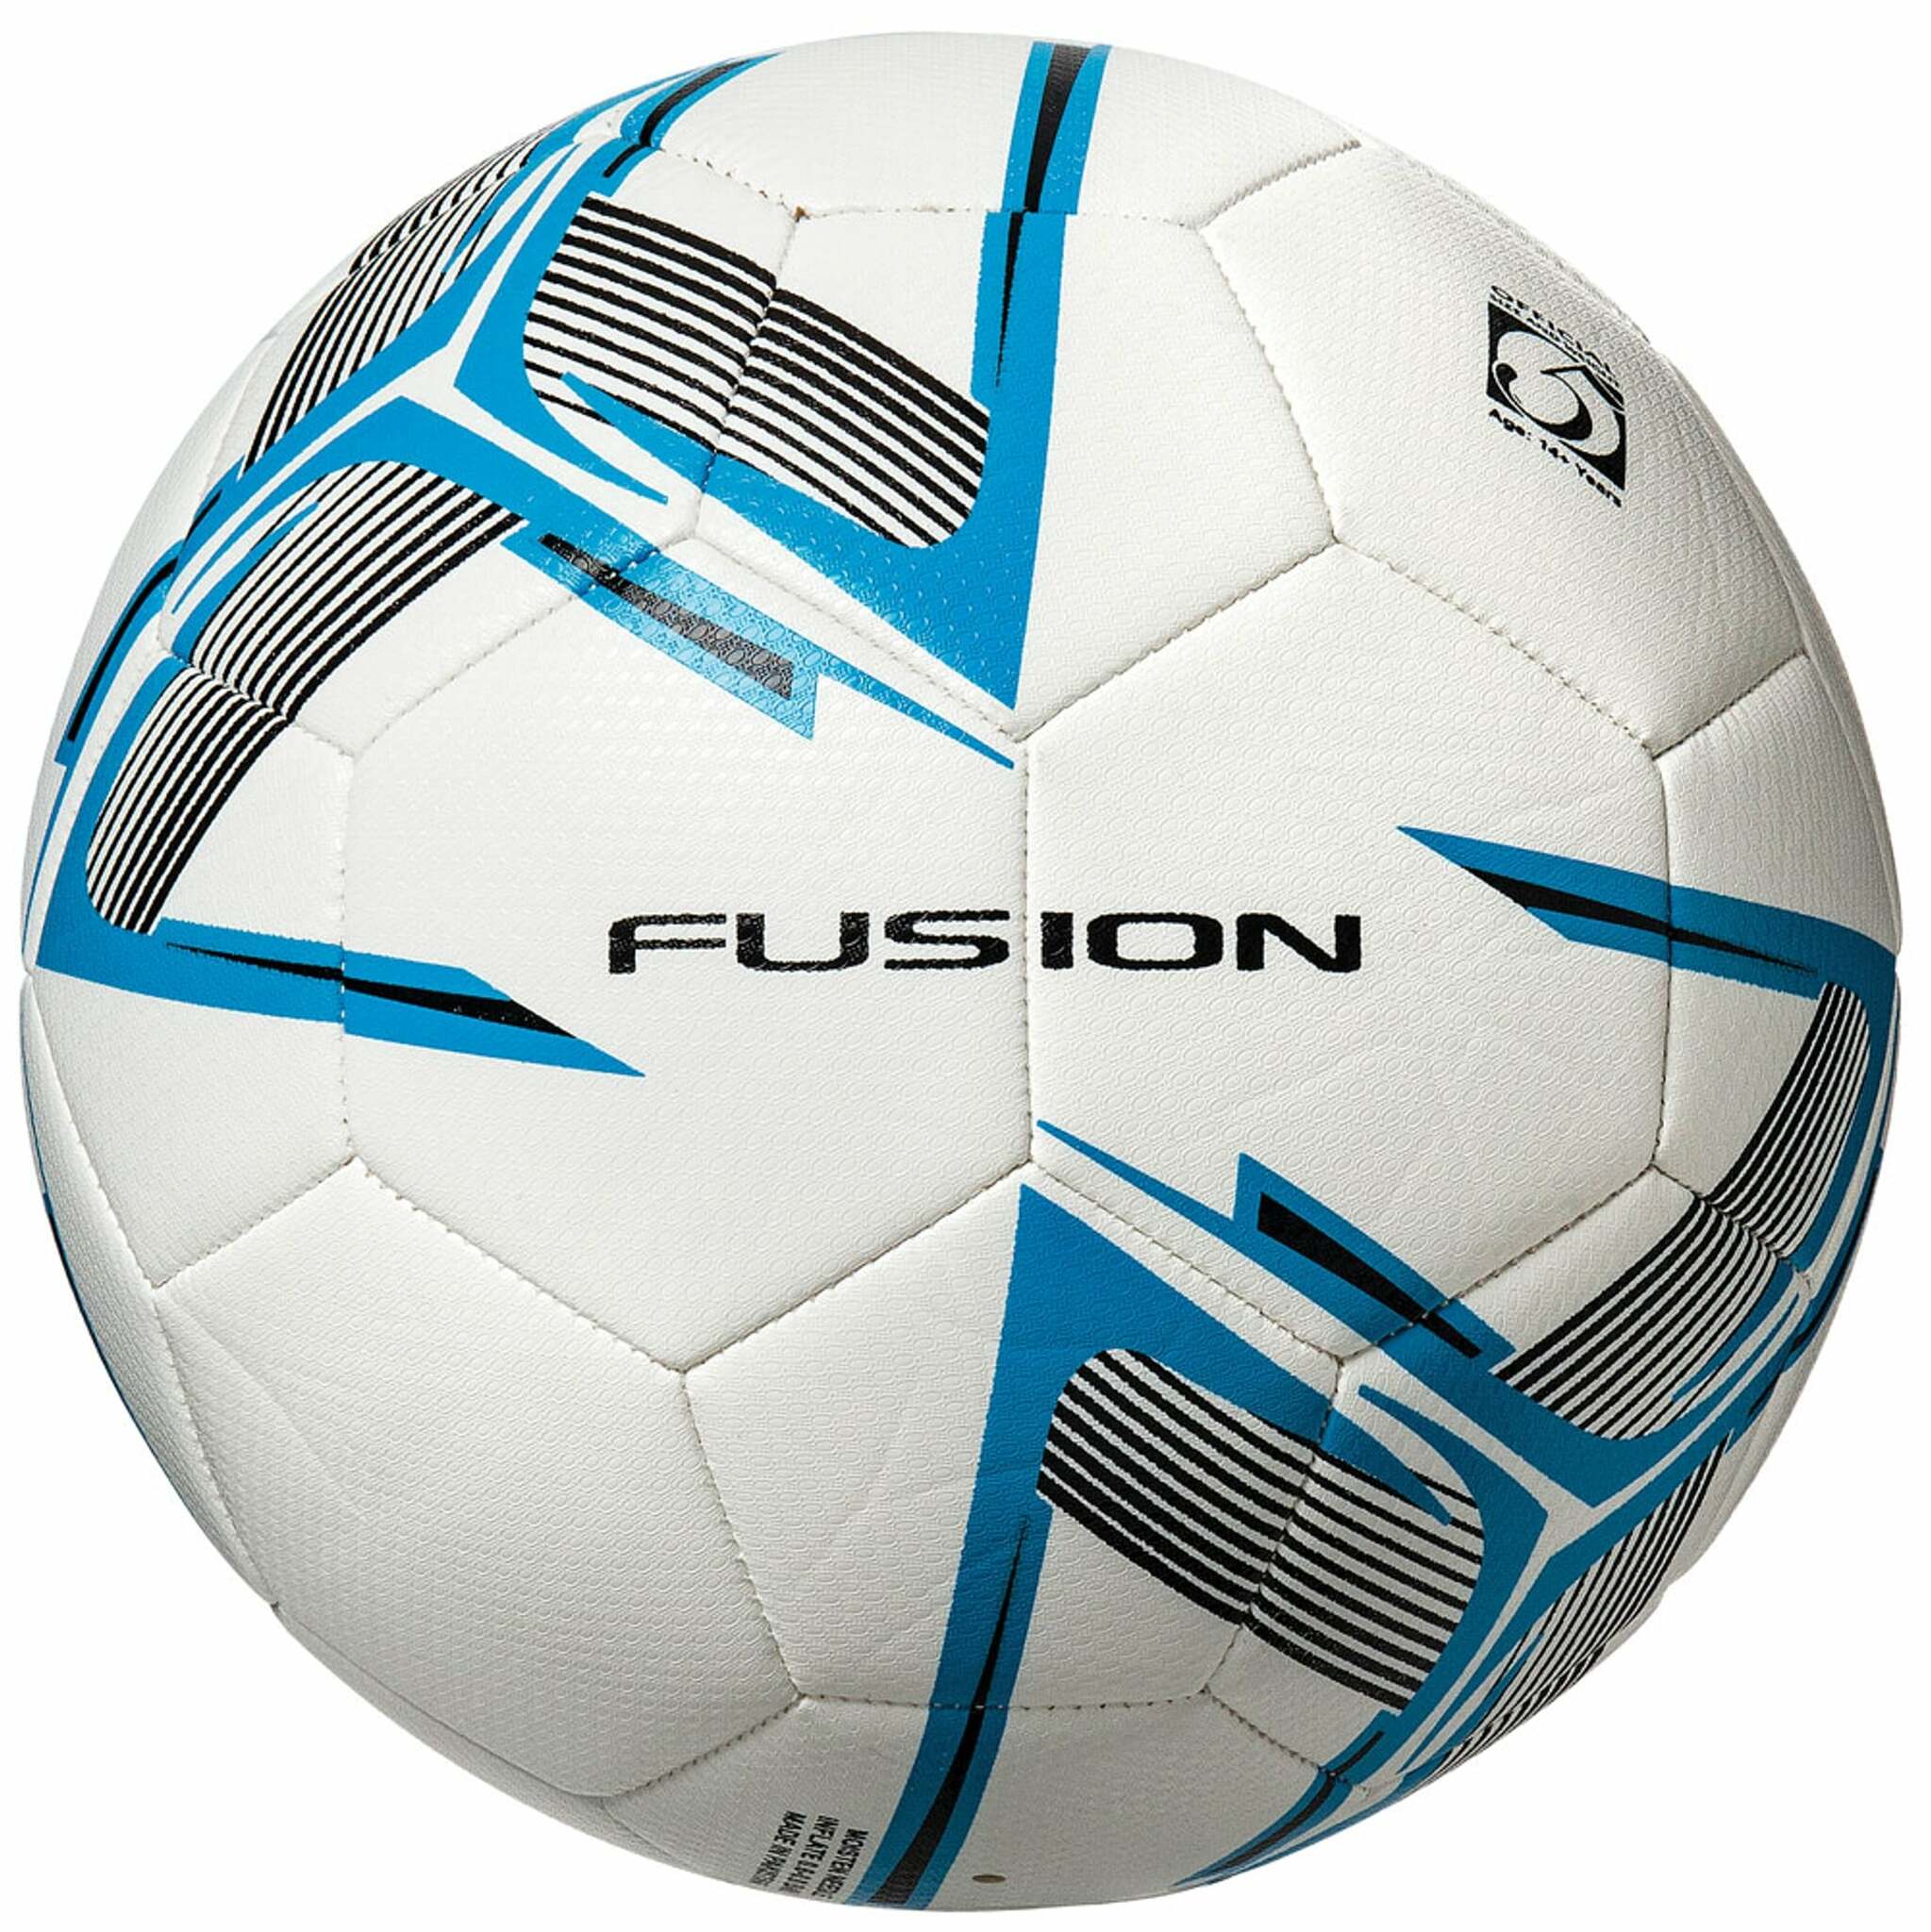 Billede af Fusion træningsfodbold - Precision